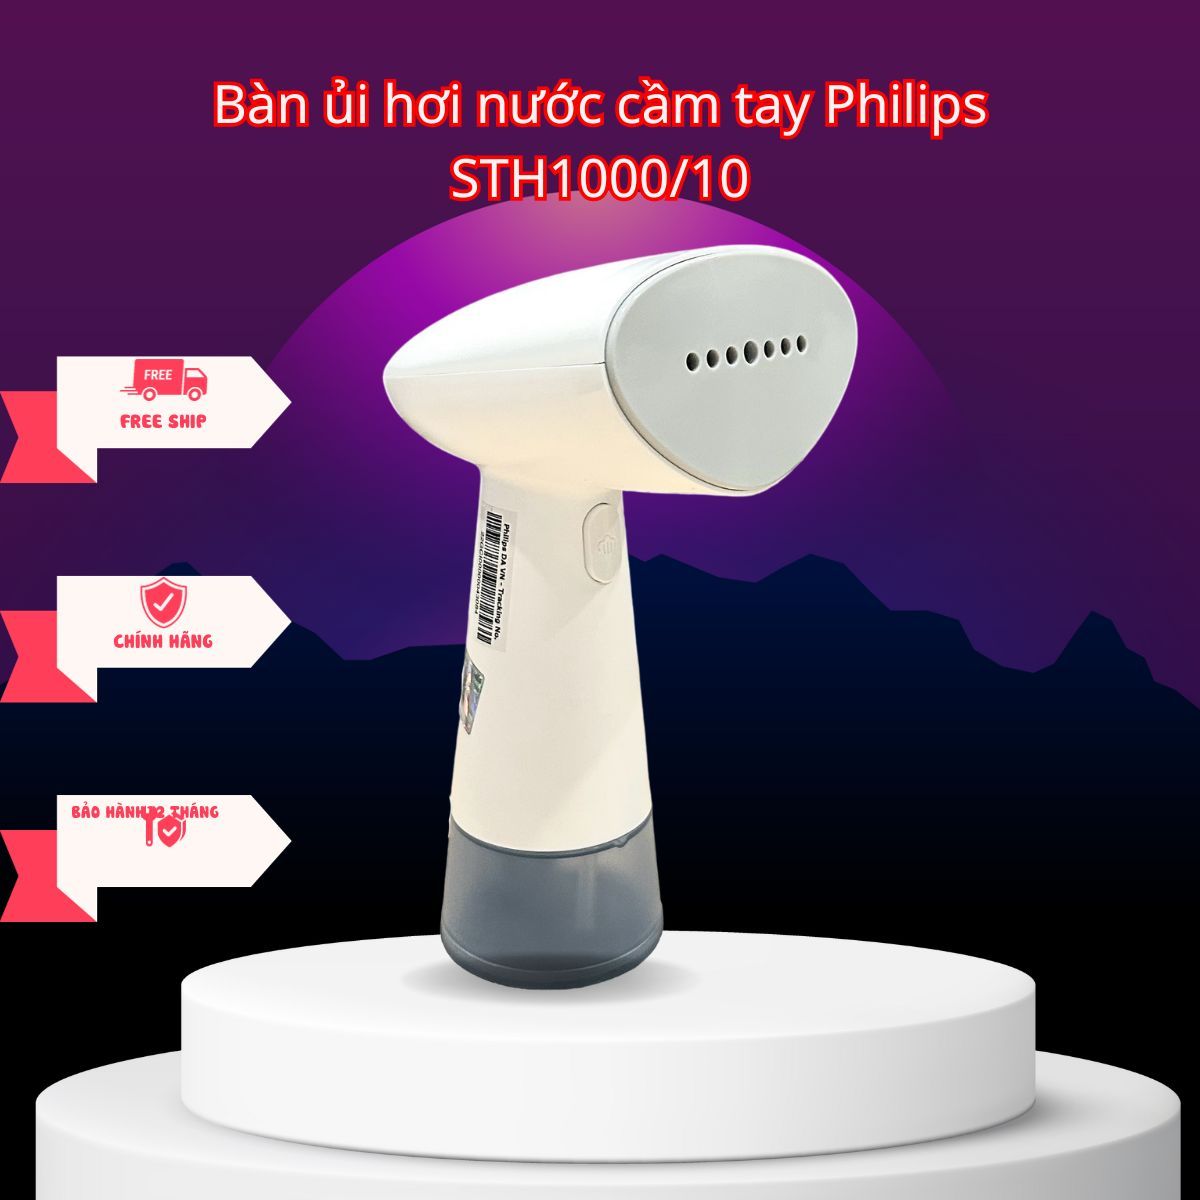  Bàn ủi hơi nước cầm tay Philips STH1000/10 Bảo hành 12 tháng 